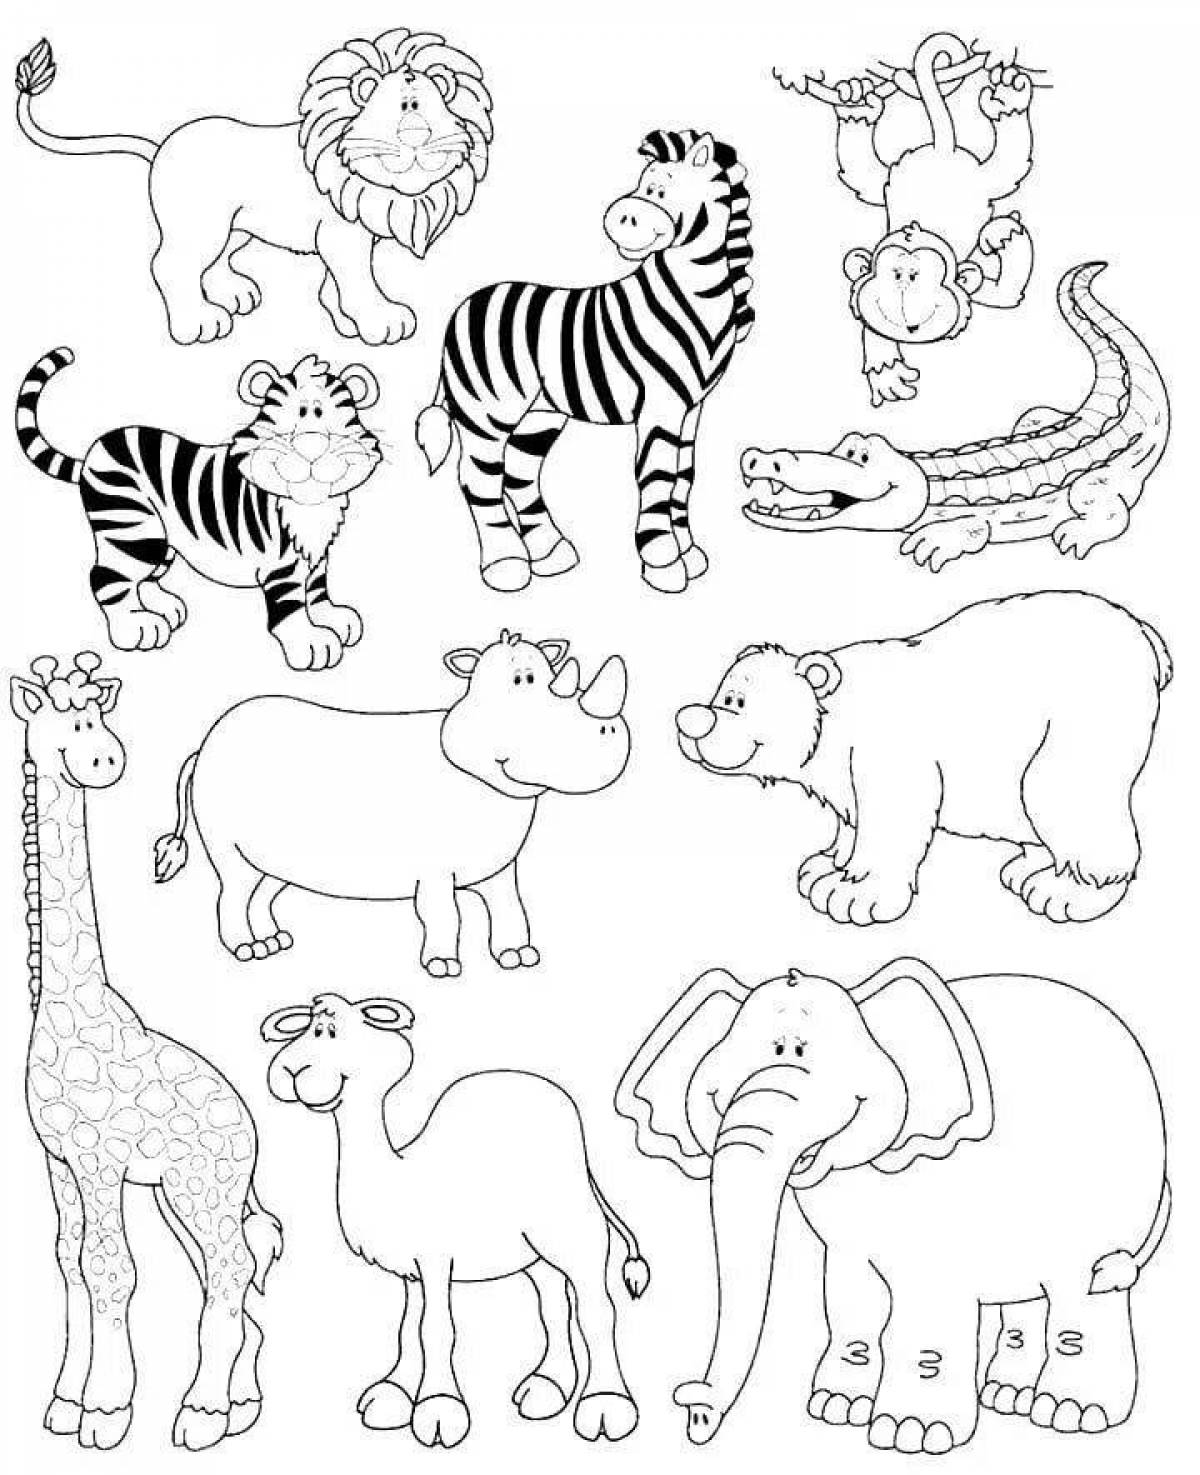 Игривая страница раскраски африканских животных для детей 6-7 лет